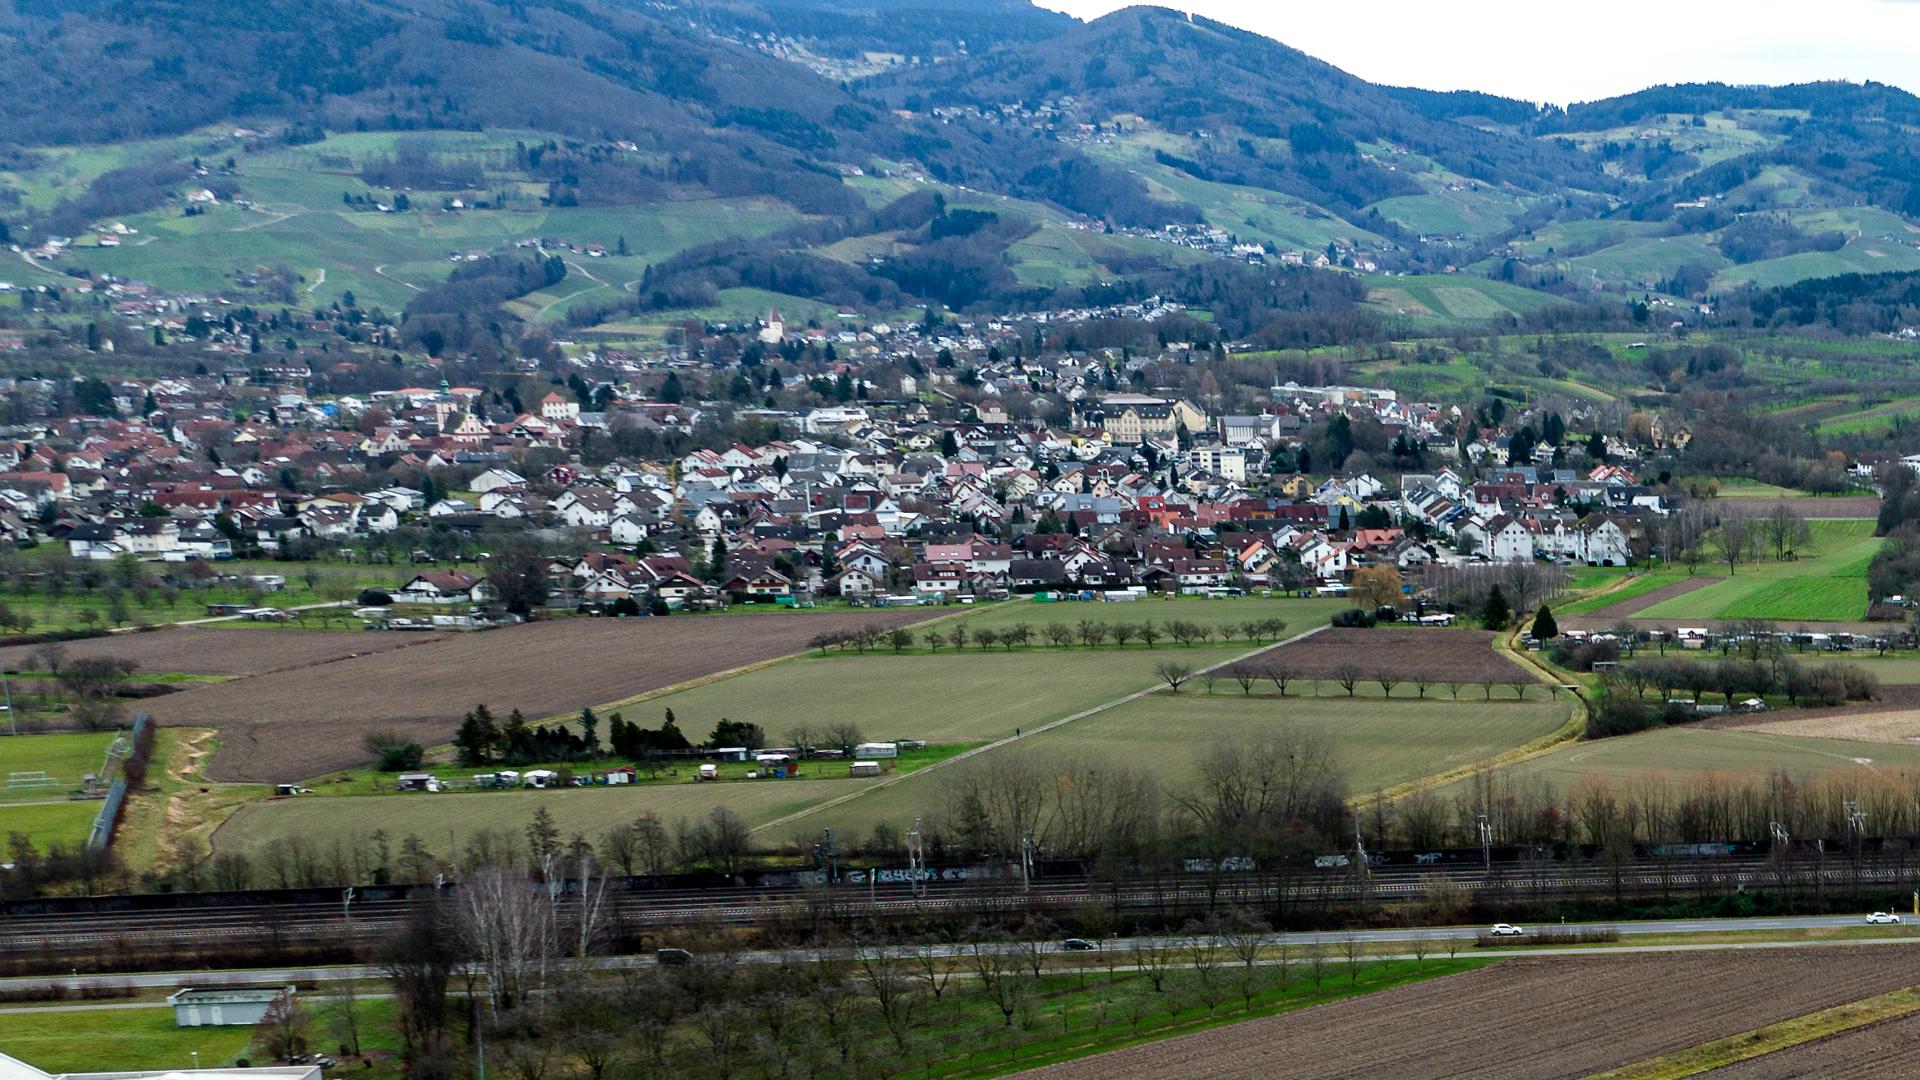 Sasbach entwickelt neue Baugebiete, zuletzt ist die Bevölkerung mehrere Jahre in folge geschrumpft. Stichwort Waldfeld III